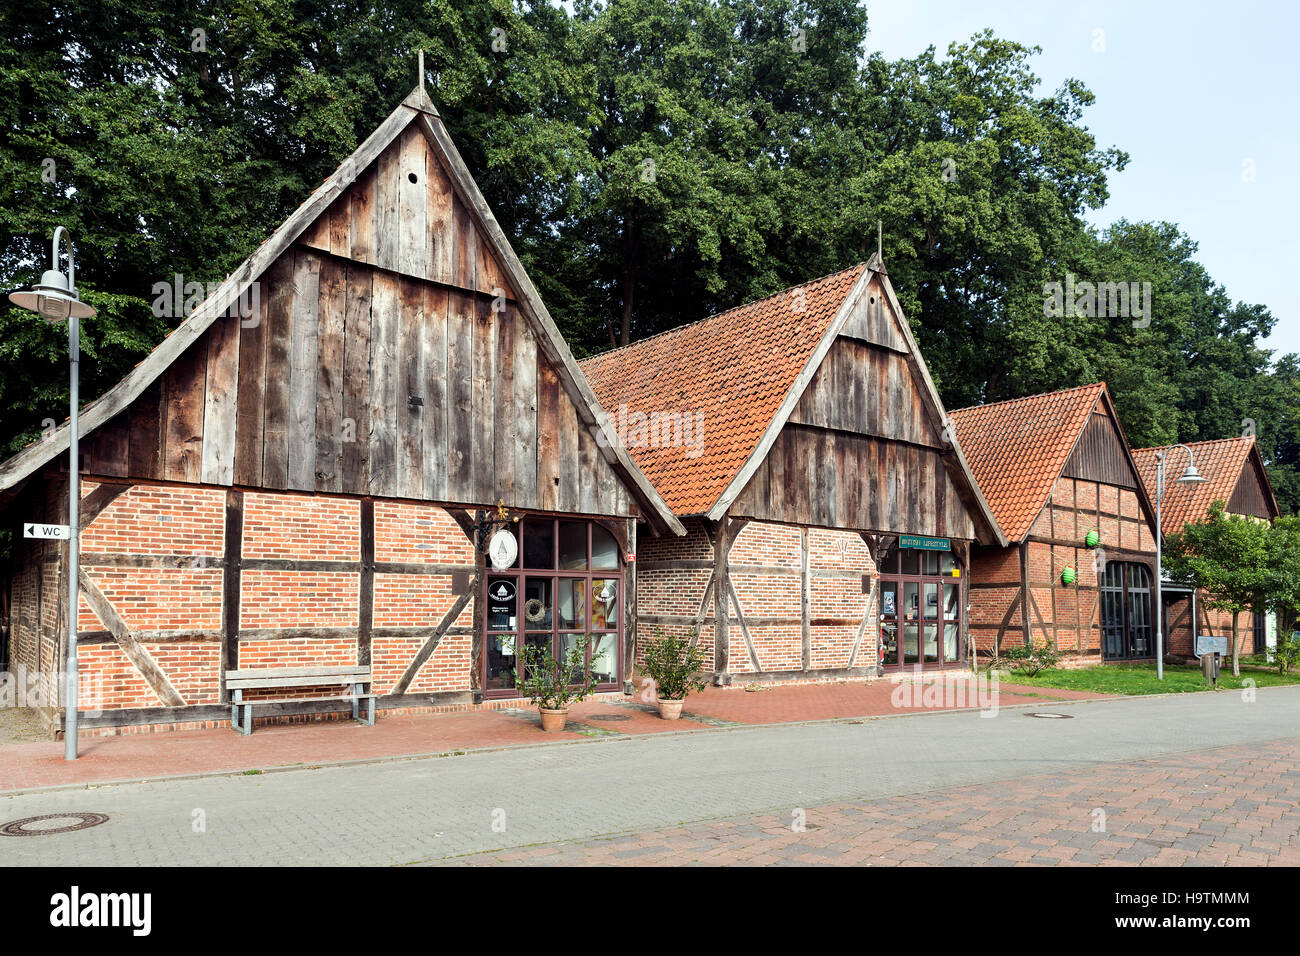 Il quartiere del granaio con gli storici granai in mezzo in legno stile, Steinhude, Wunstorf, Bassa Sassonia, Germania Foto Stock